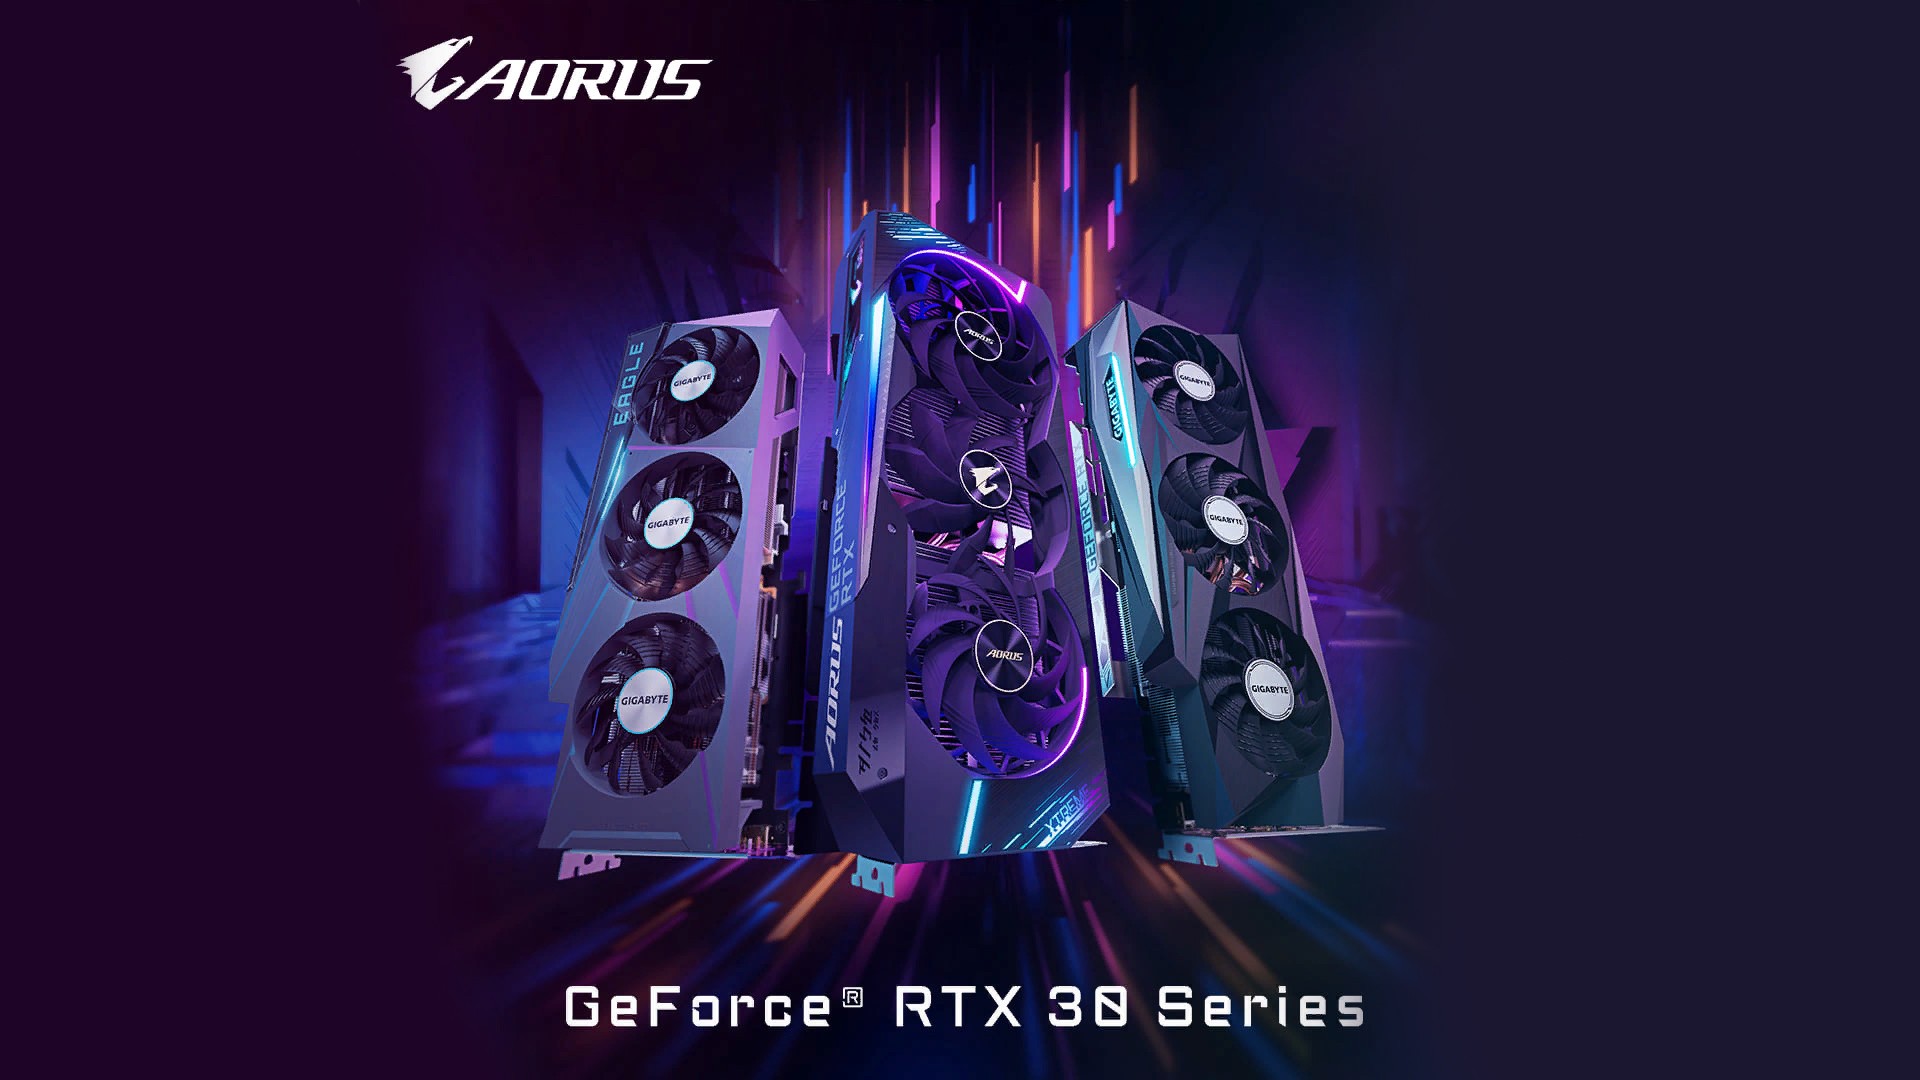 Certificao vaza GPUs GeForce RTX 30 personalizadas da Gigabyte antes do lanamento